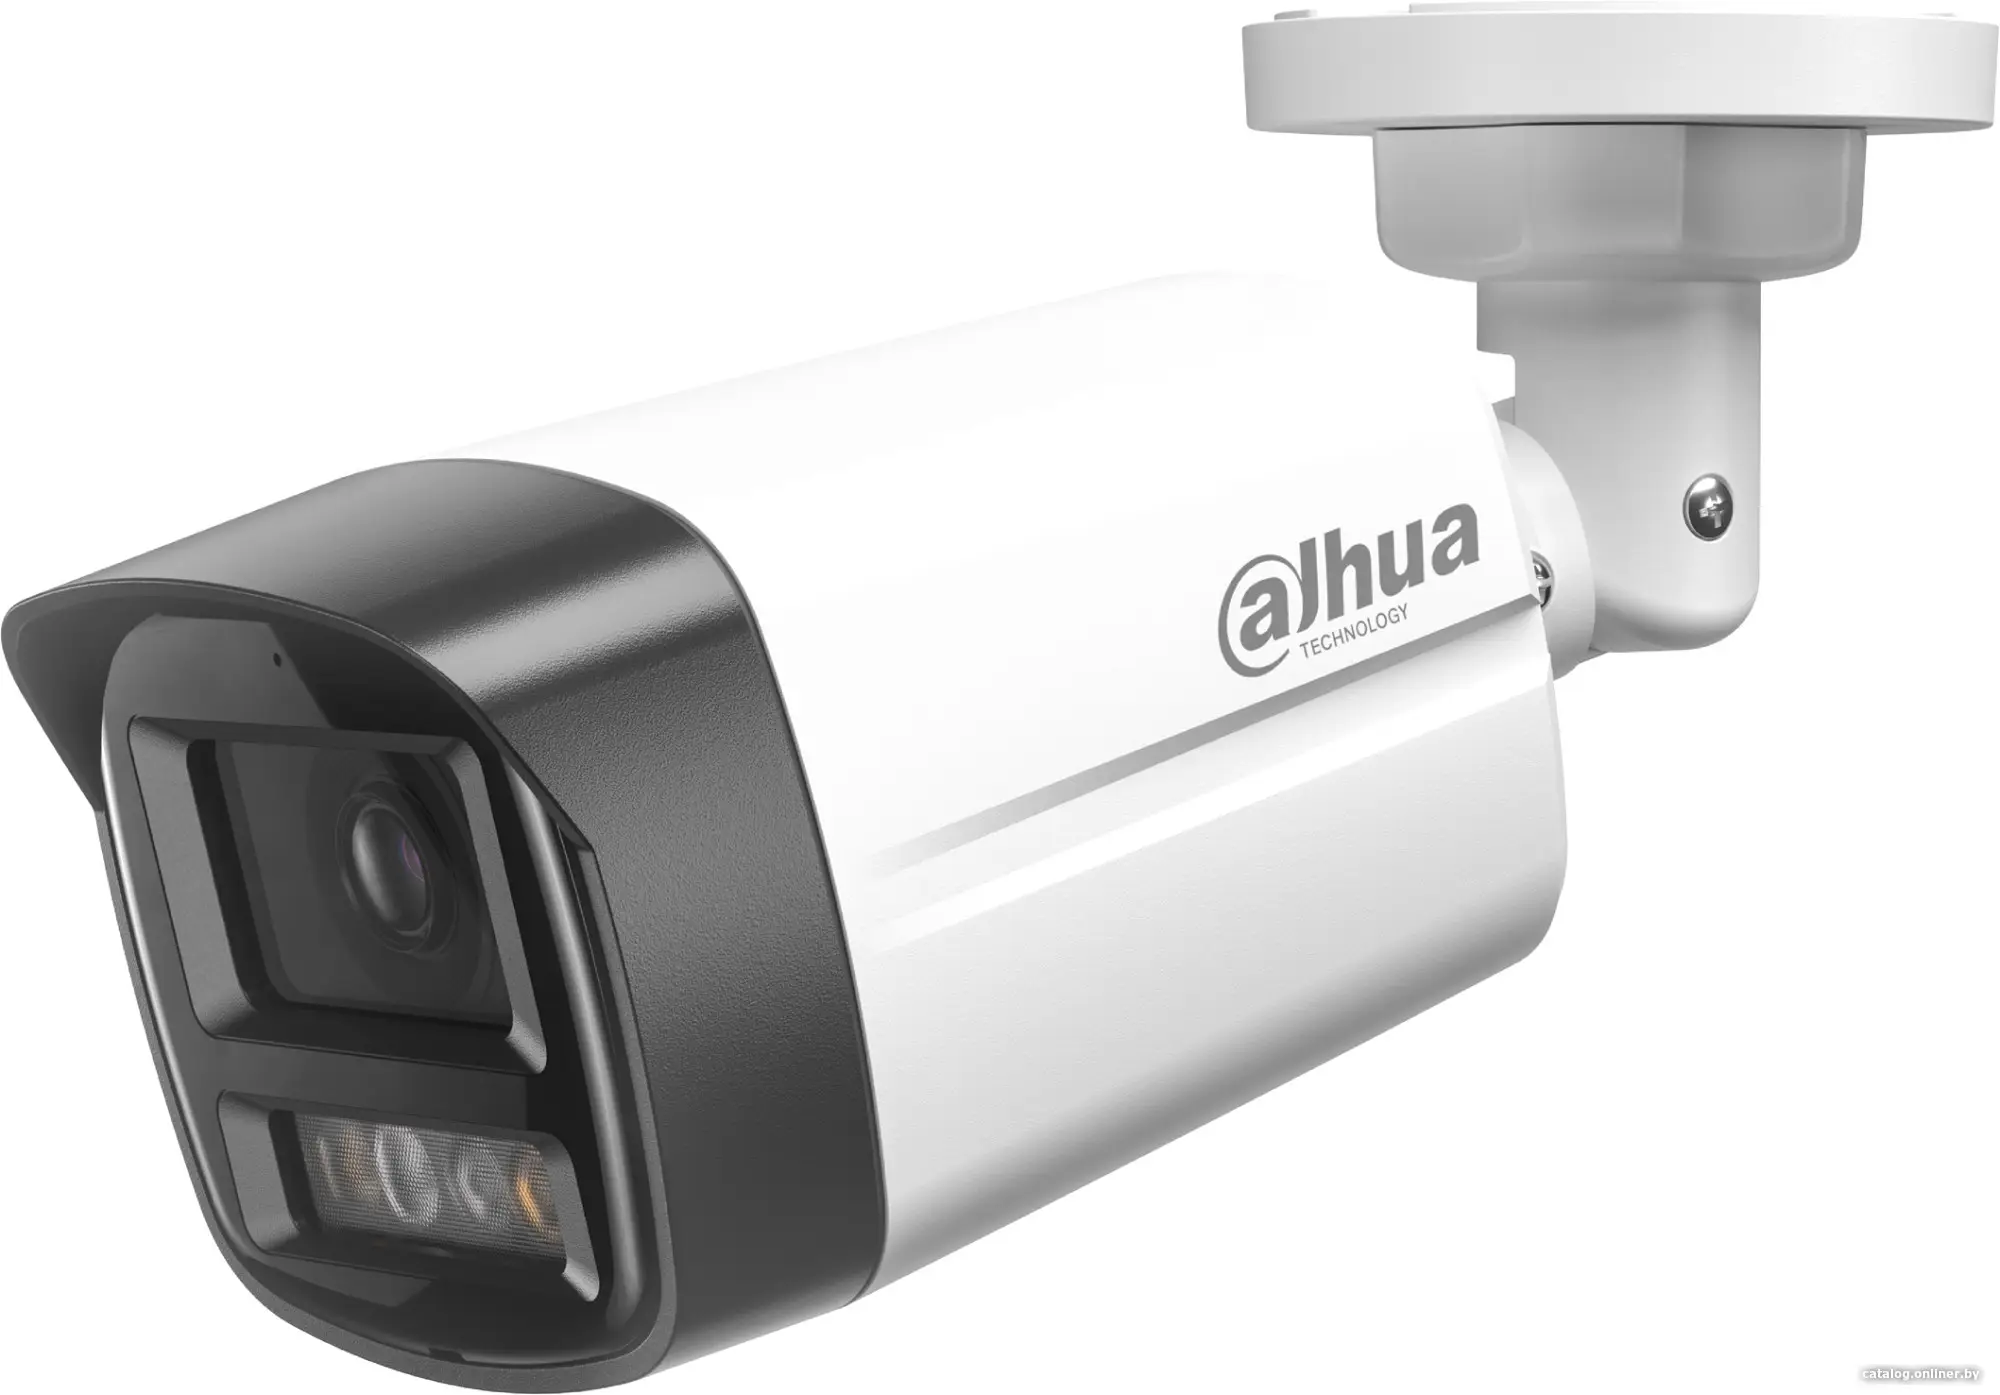 Купить Камера видеонаблюдения Dahua DH-IPC-HFW1439TL1P-A-IL-0360B, цена, опт и розница